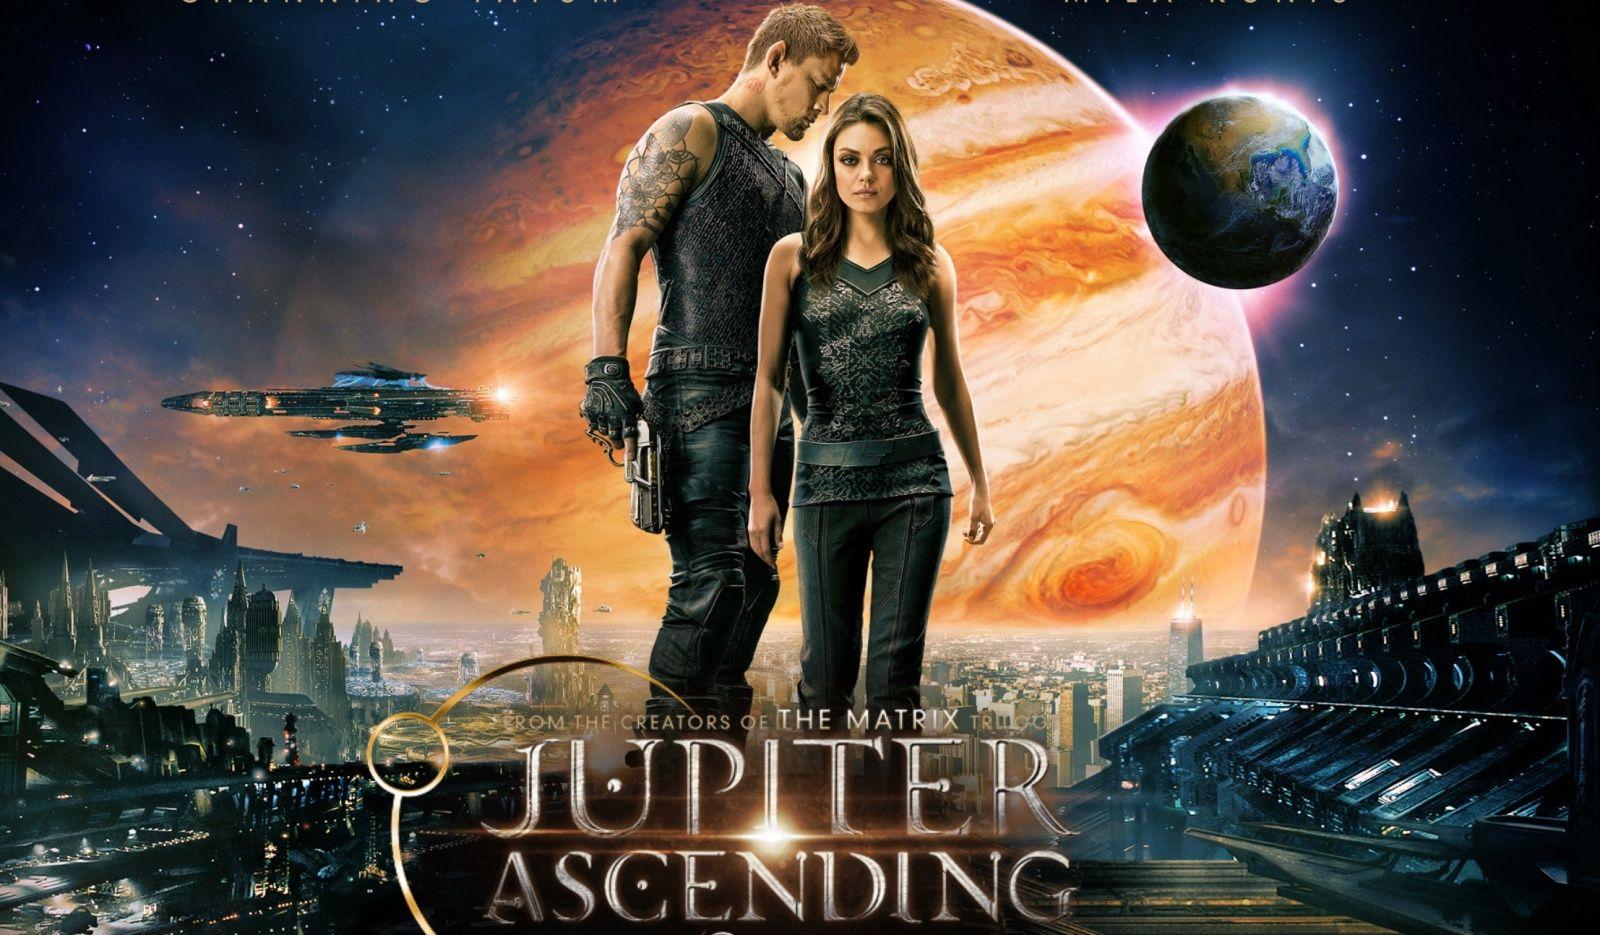 افضل افلام يناير وفبراير 2015 - فيلم Jupiter Ascending 